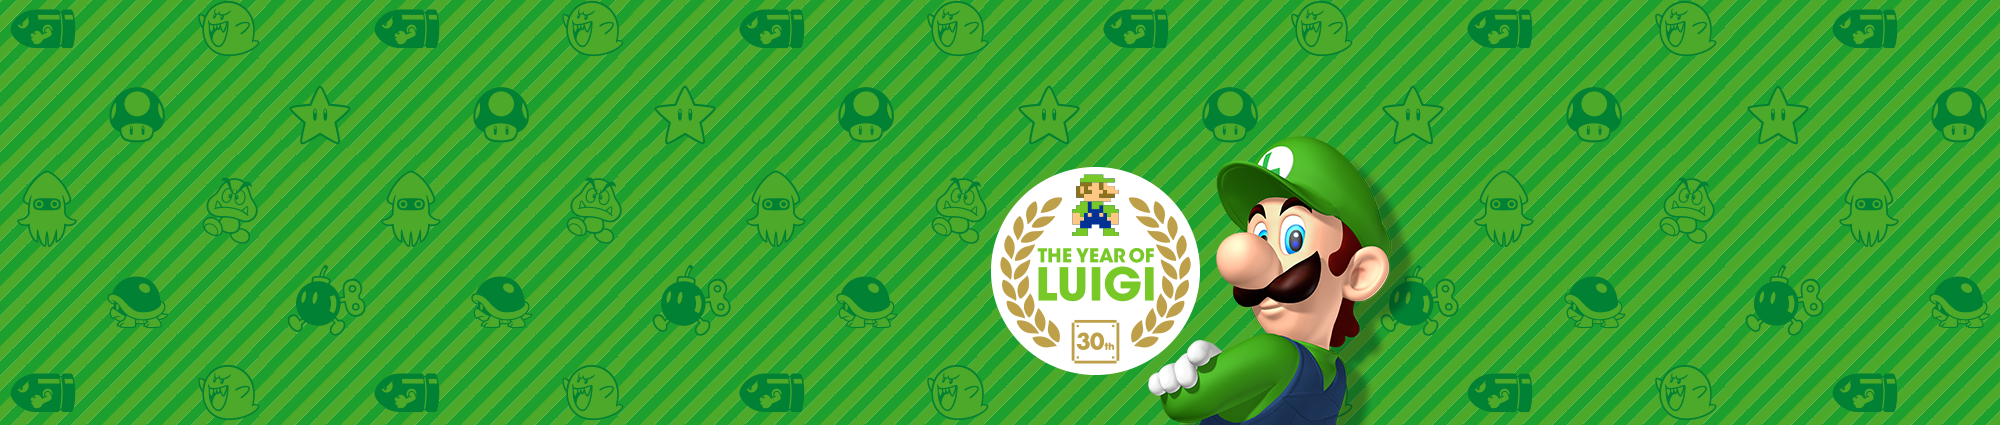 O Ano de Luigi! 